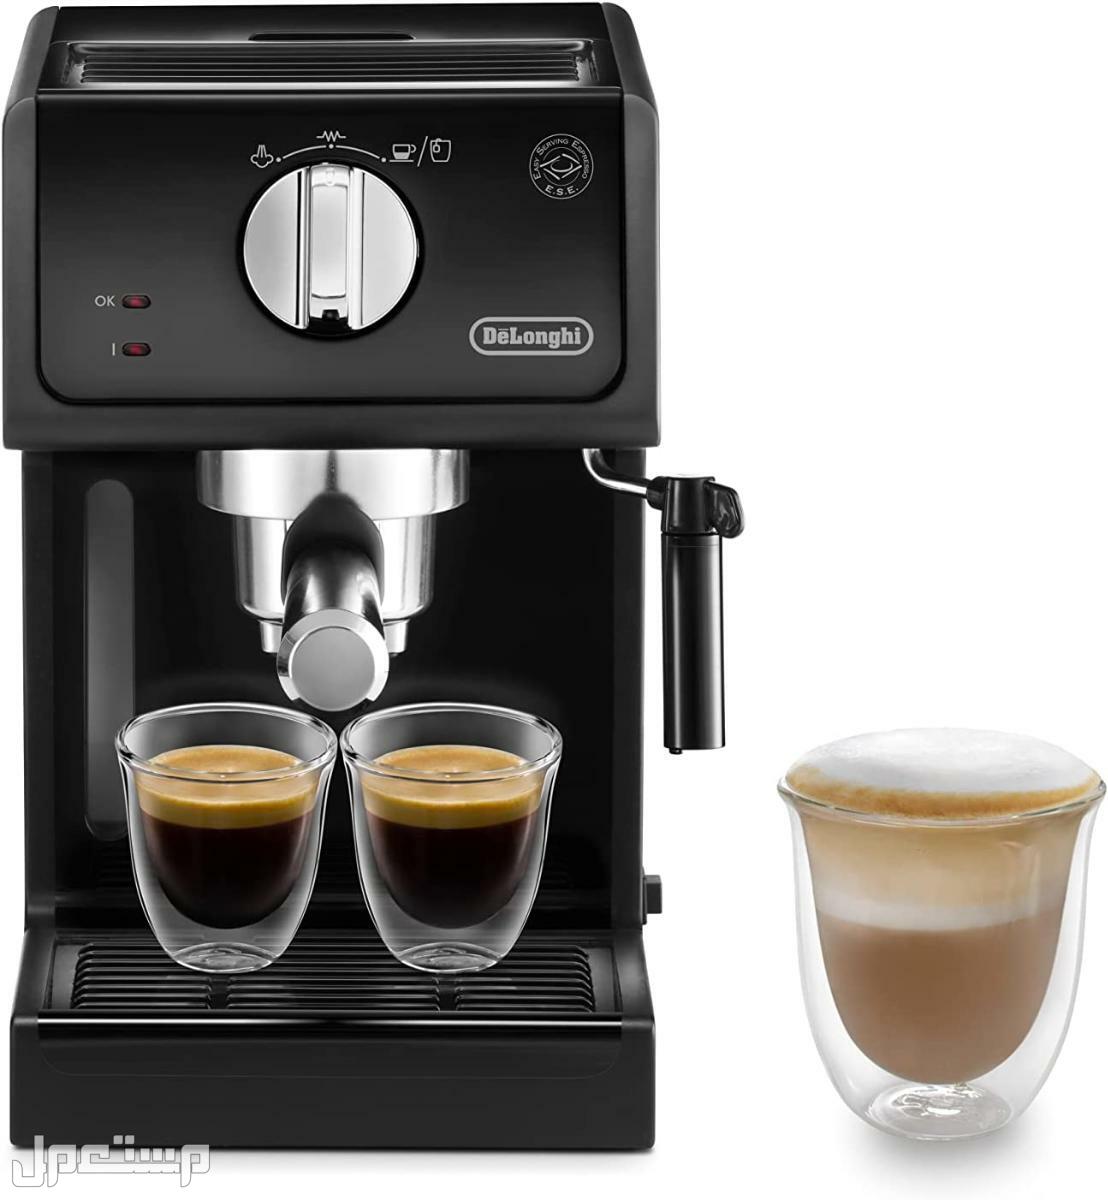 عيوب ومميزات ومواصفات وسعر ماكينة قهوة ديلونجى ديديكا لماذا عليك شراء ماكينة قهوة ديلونجي ديديكا ؟